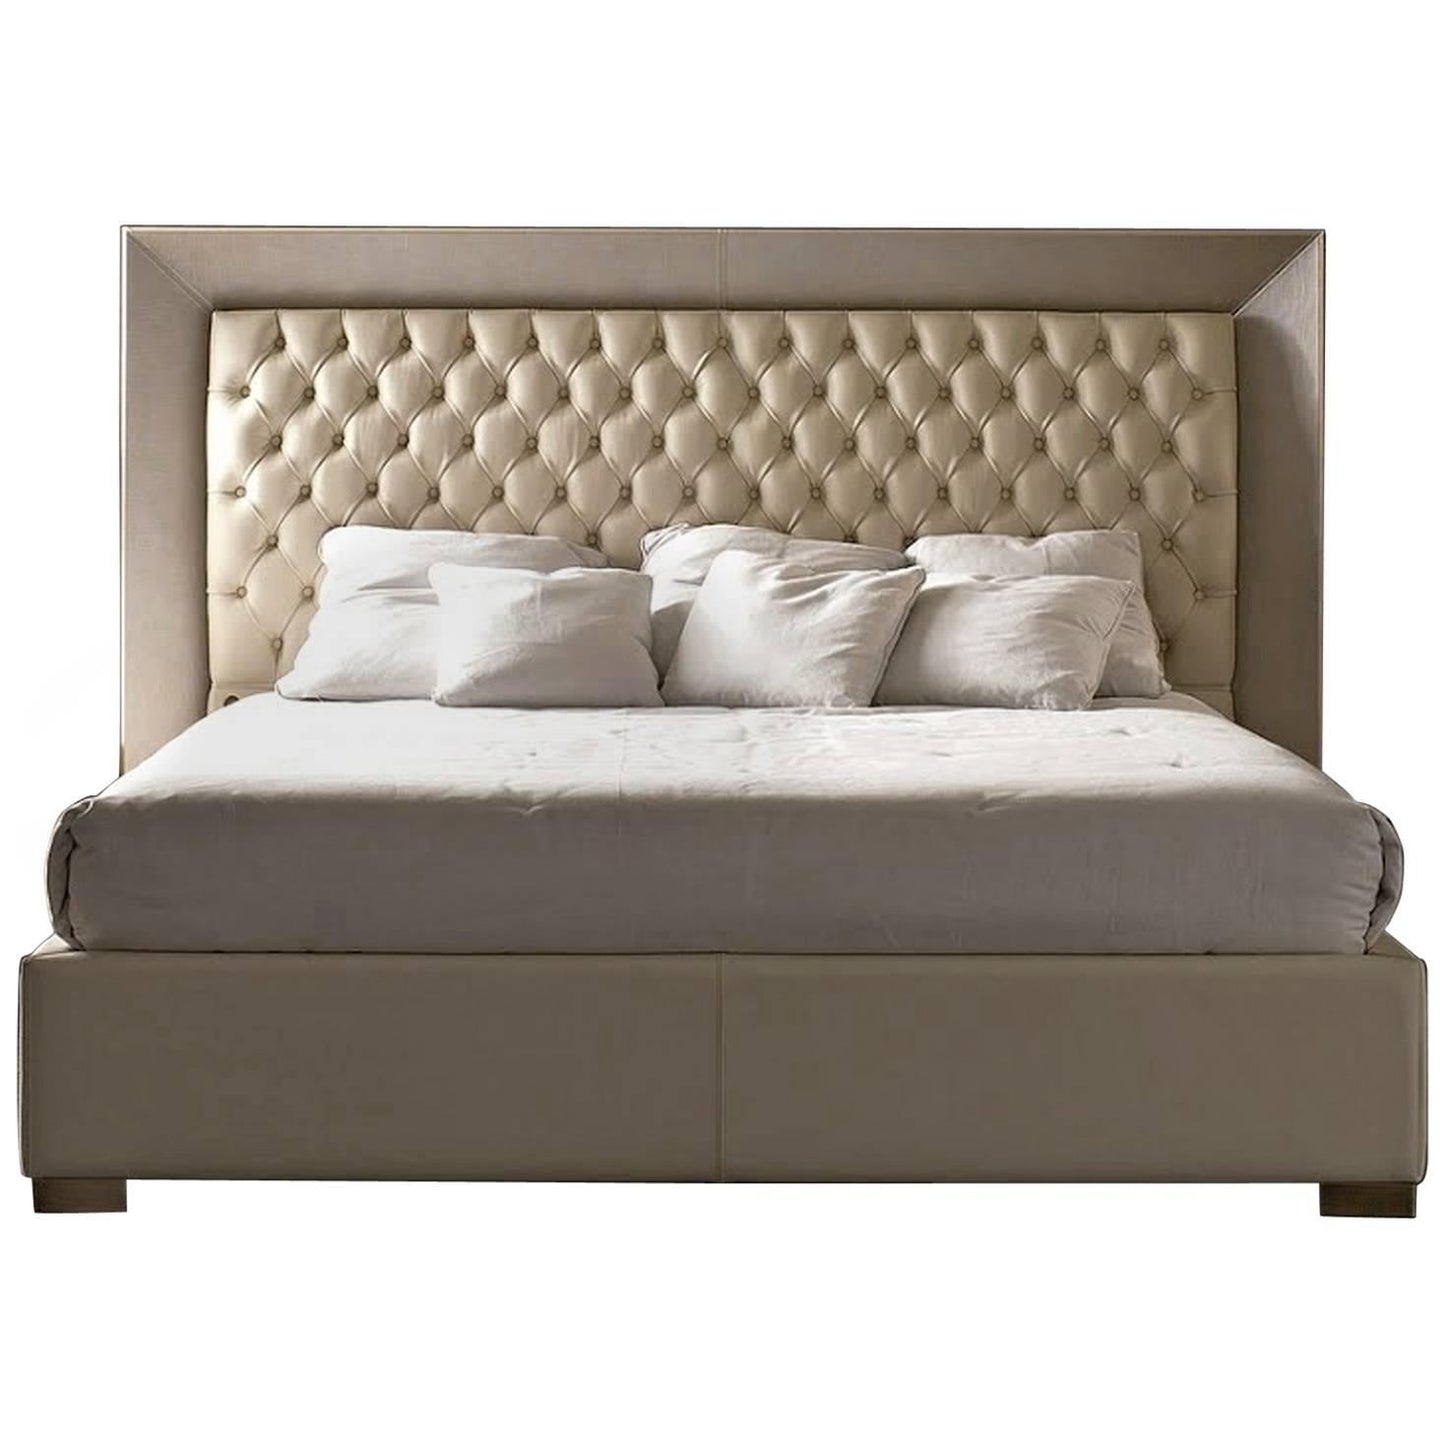 سرير تنجيد بسحارة 210×170 سم - خشب كونتر و زان - SY77